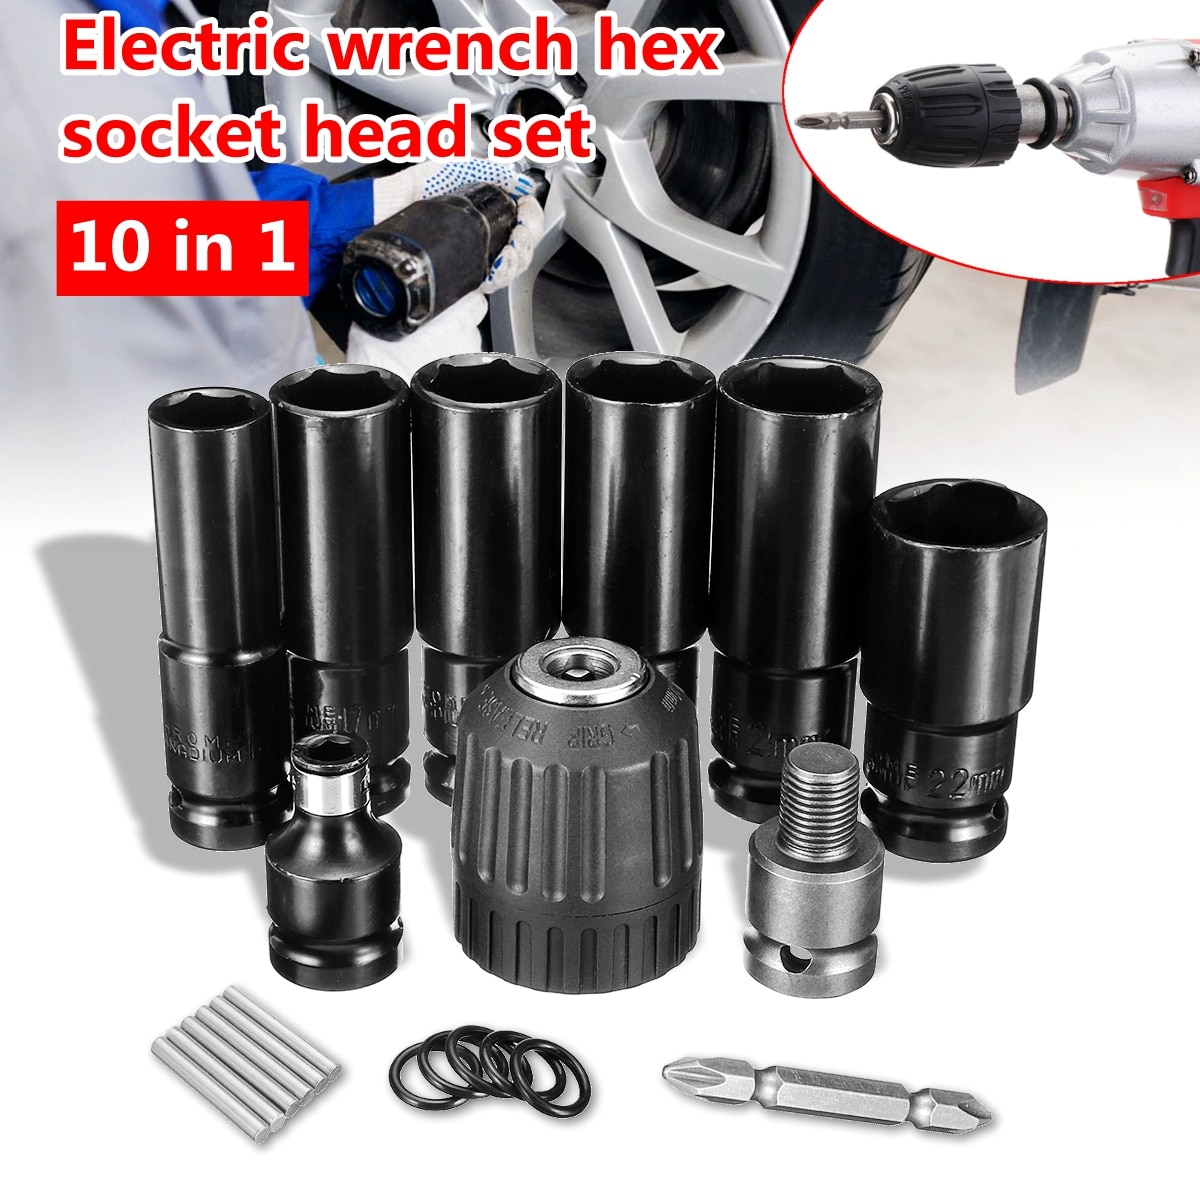 10 Pcs Elektrische Wrench Schroevendraaier Hex Socket Head Kits Set Voor Slagmoersleutel Boor